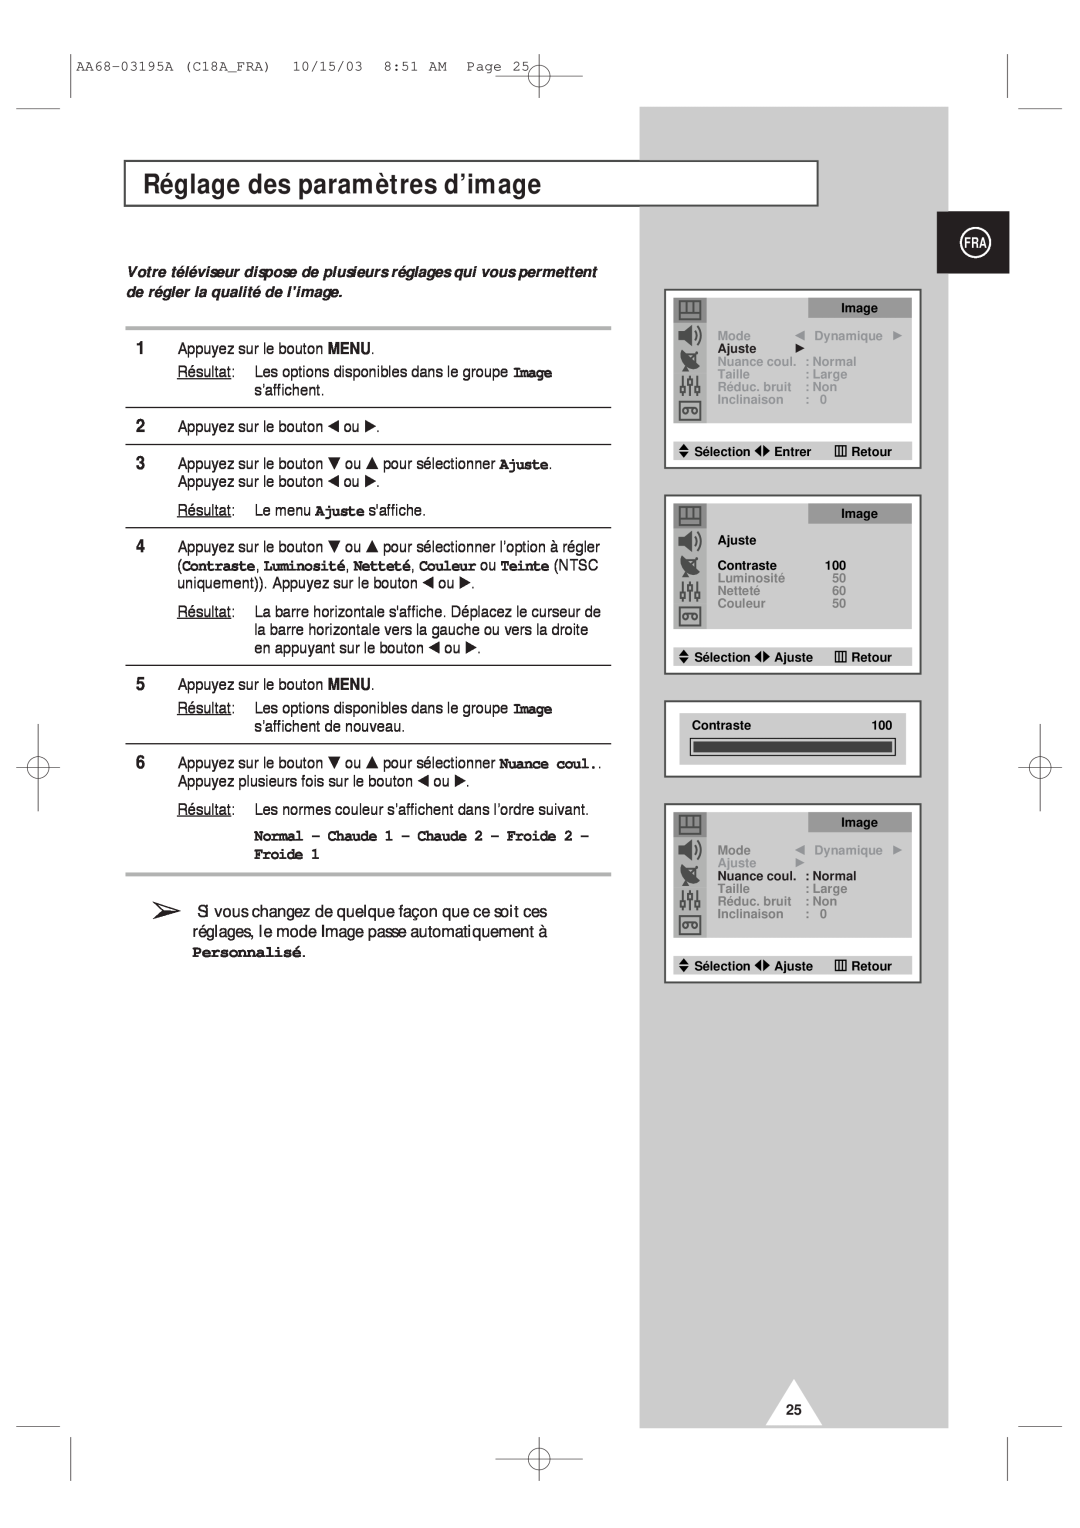 Samsung UW17J11VD5XXEF manual Réglage des paramètres d’image, Normal - Chaude 1 - Chaude 2 - Froide Froide, Personnalisé 